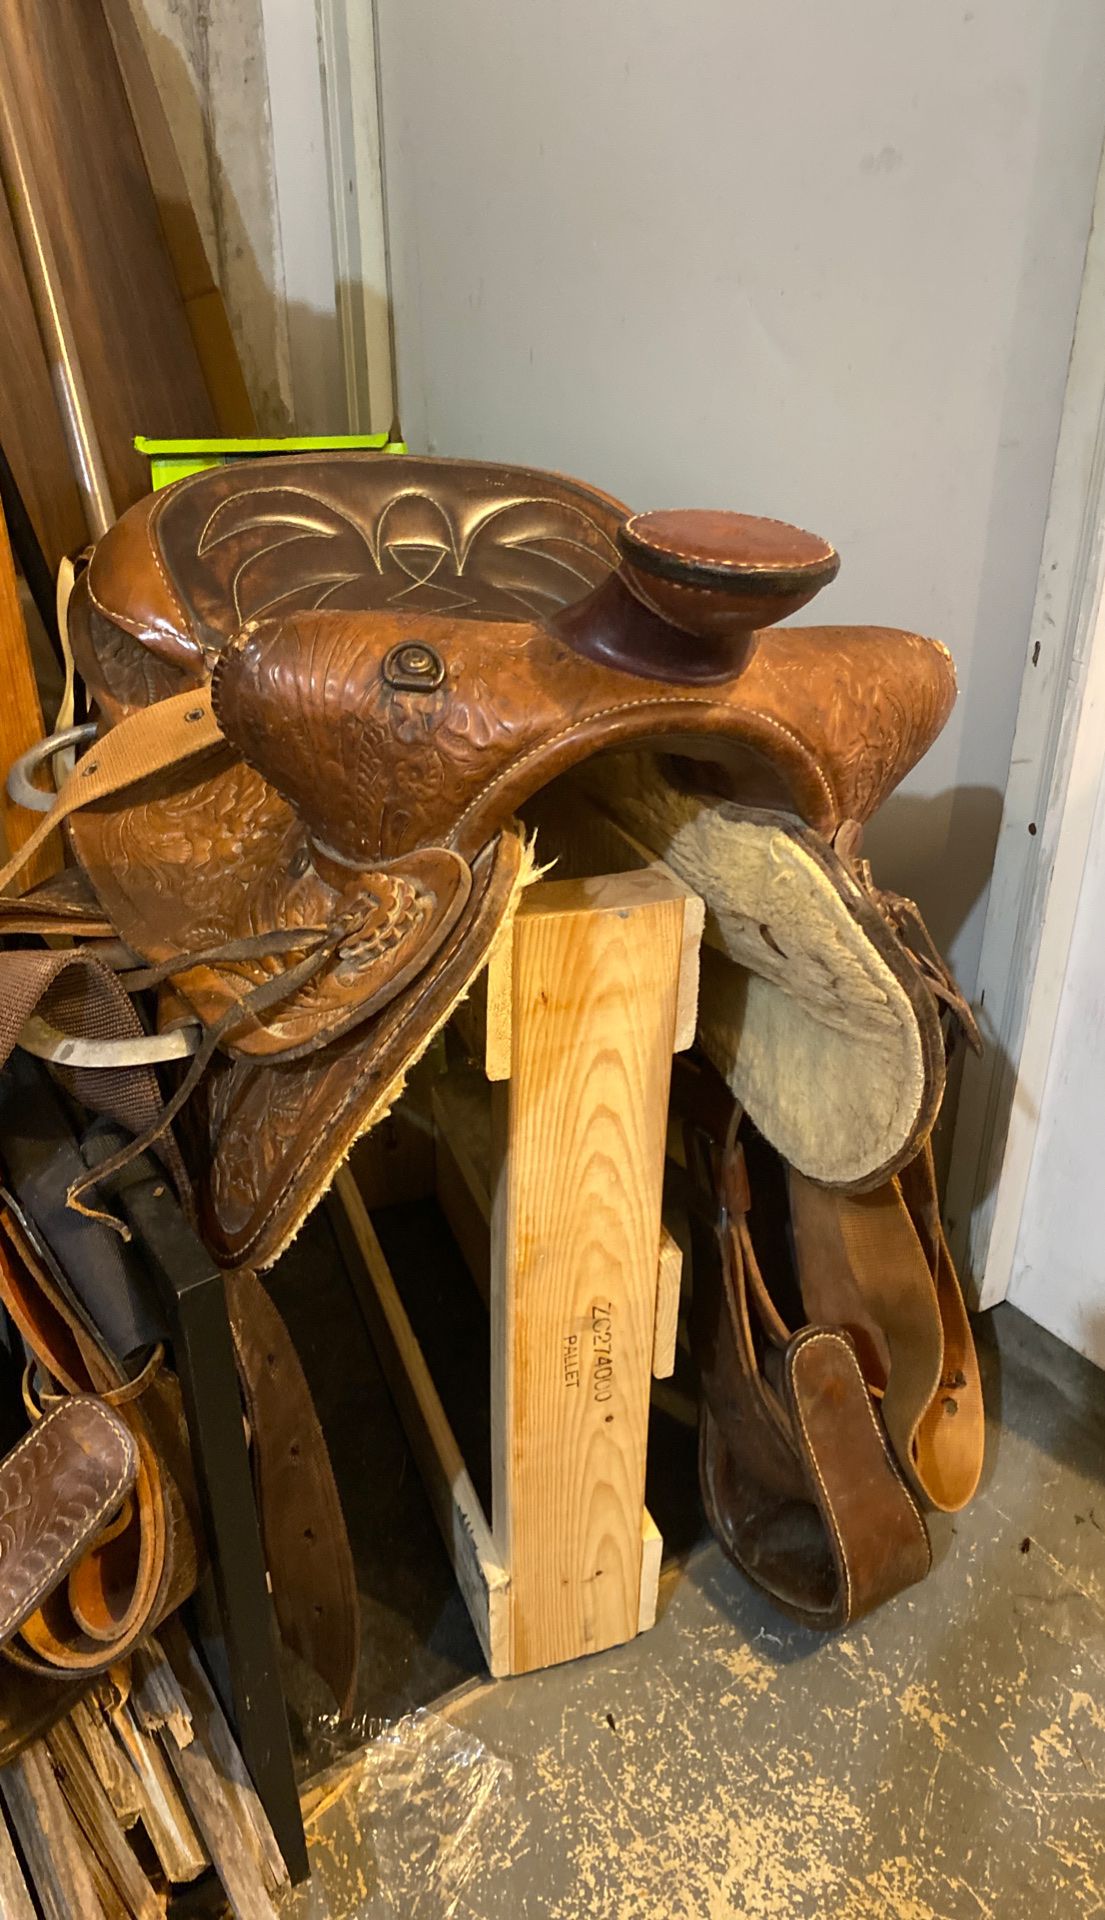 Western saddle 15”